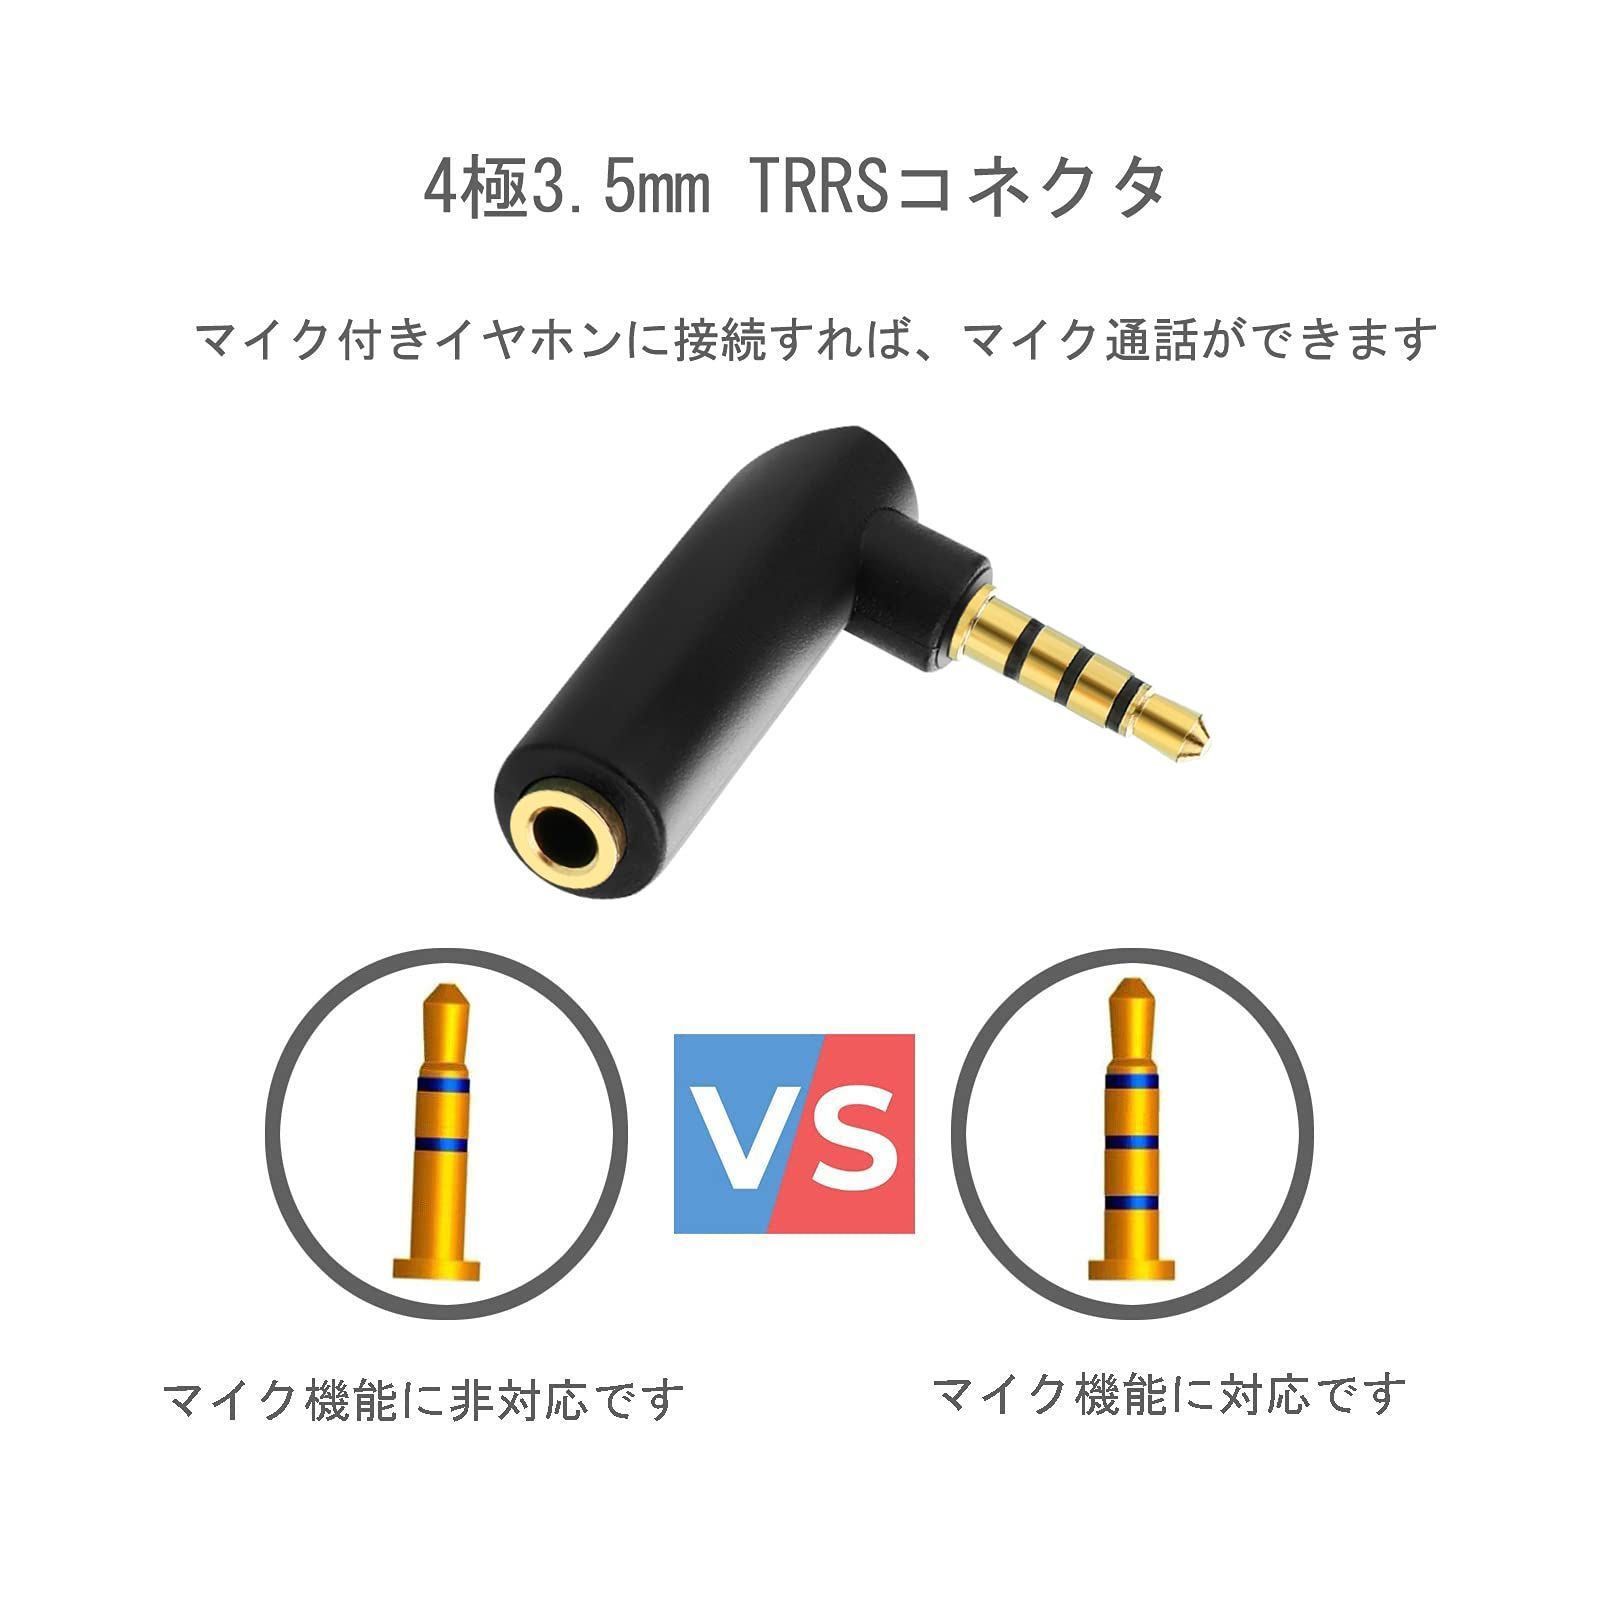 エタノール様専用　4.4mm 5極 TRS×2 バランス接続 Y字ケーブル